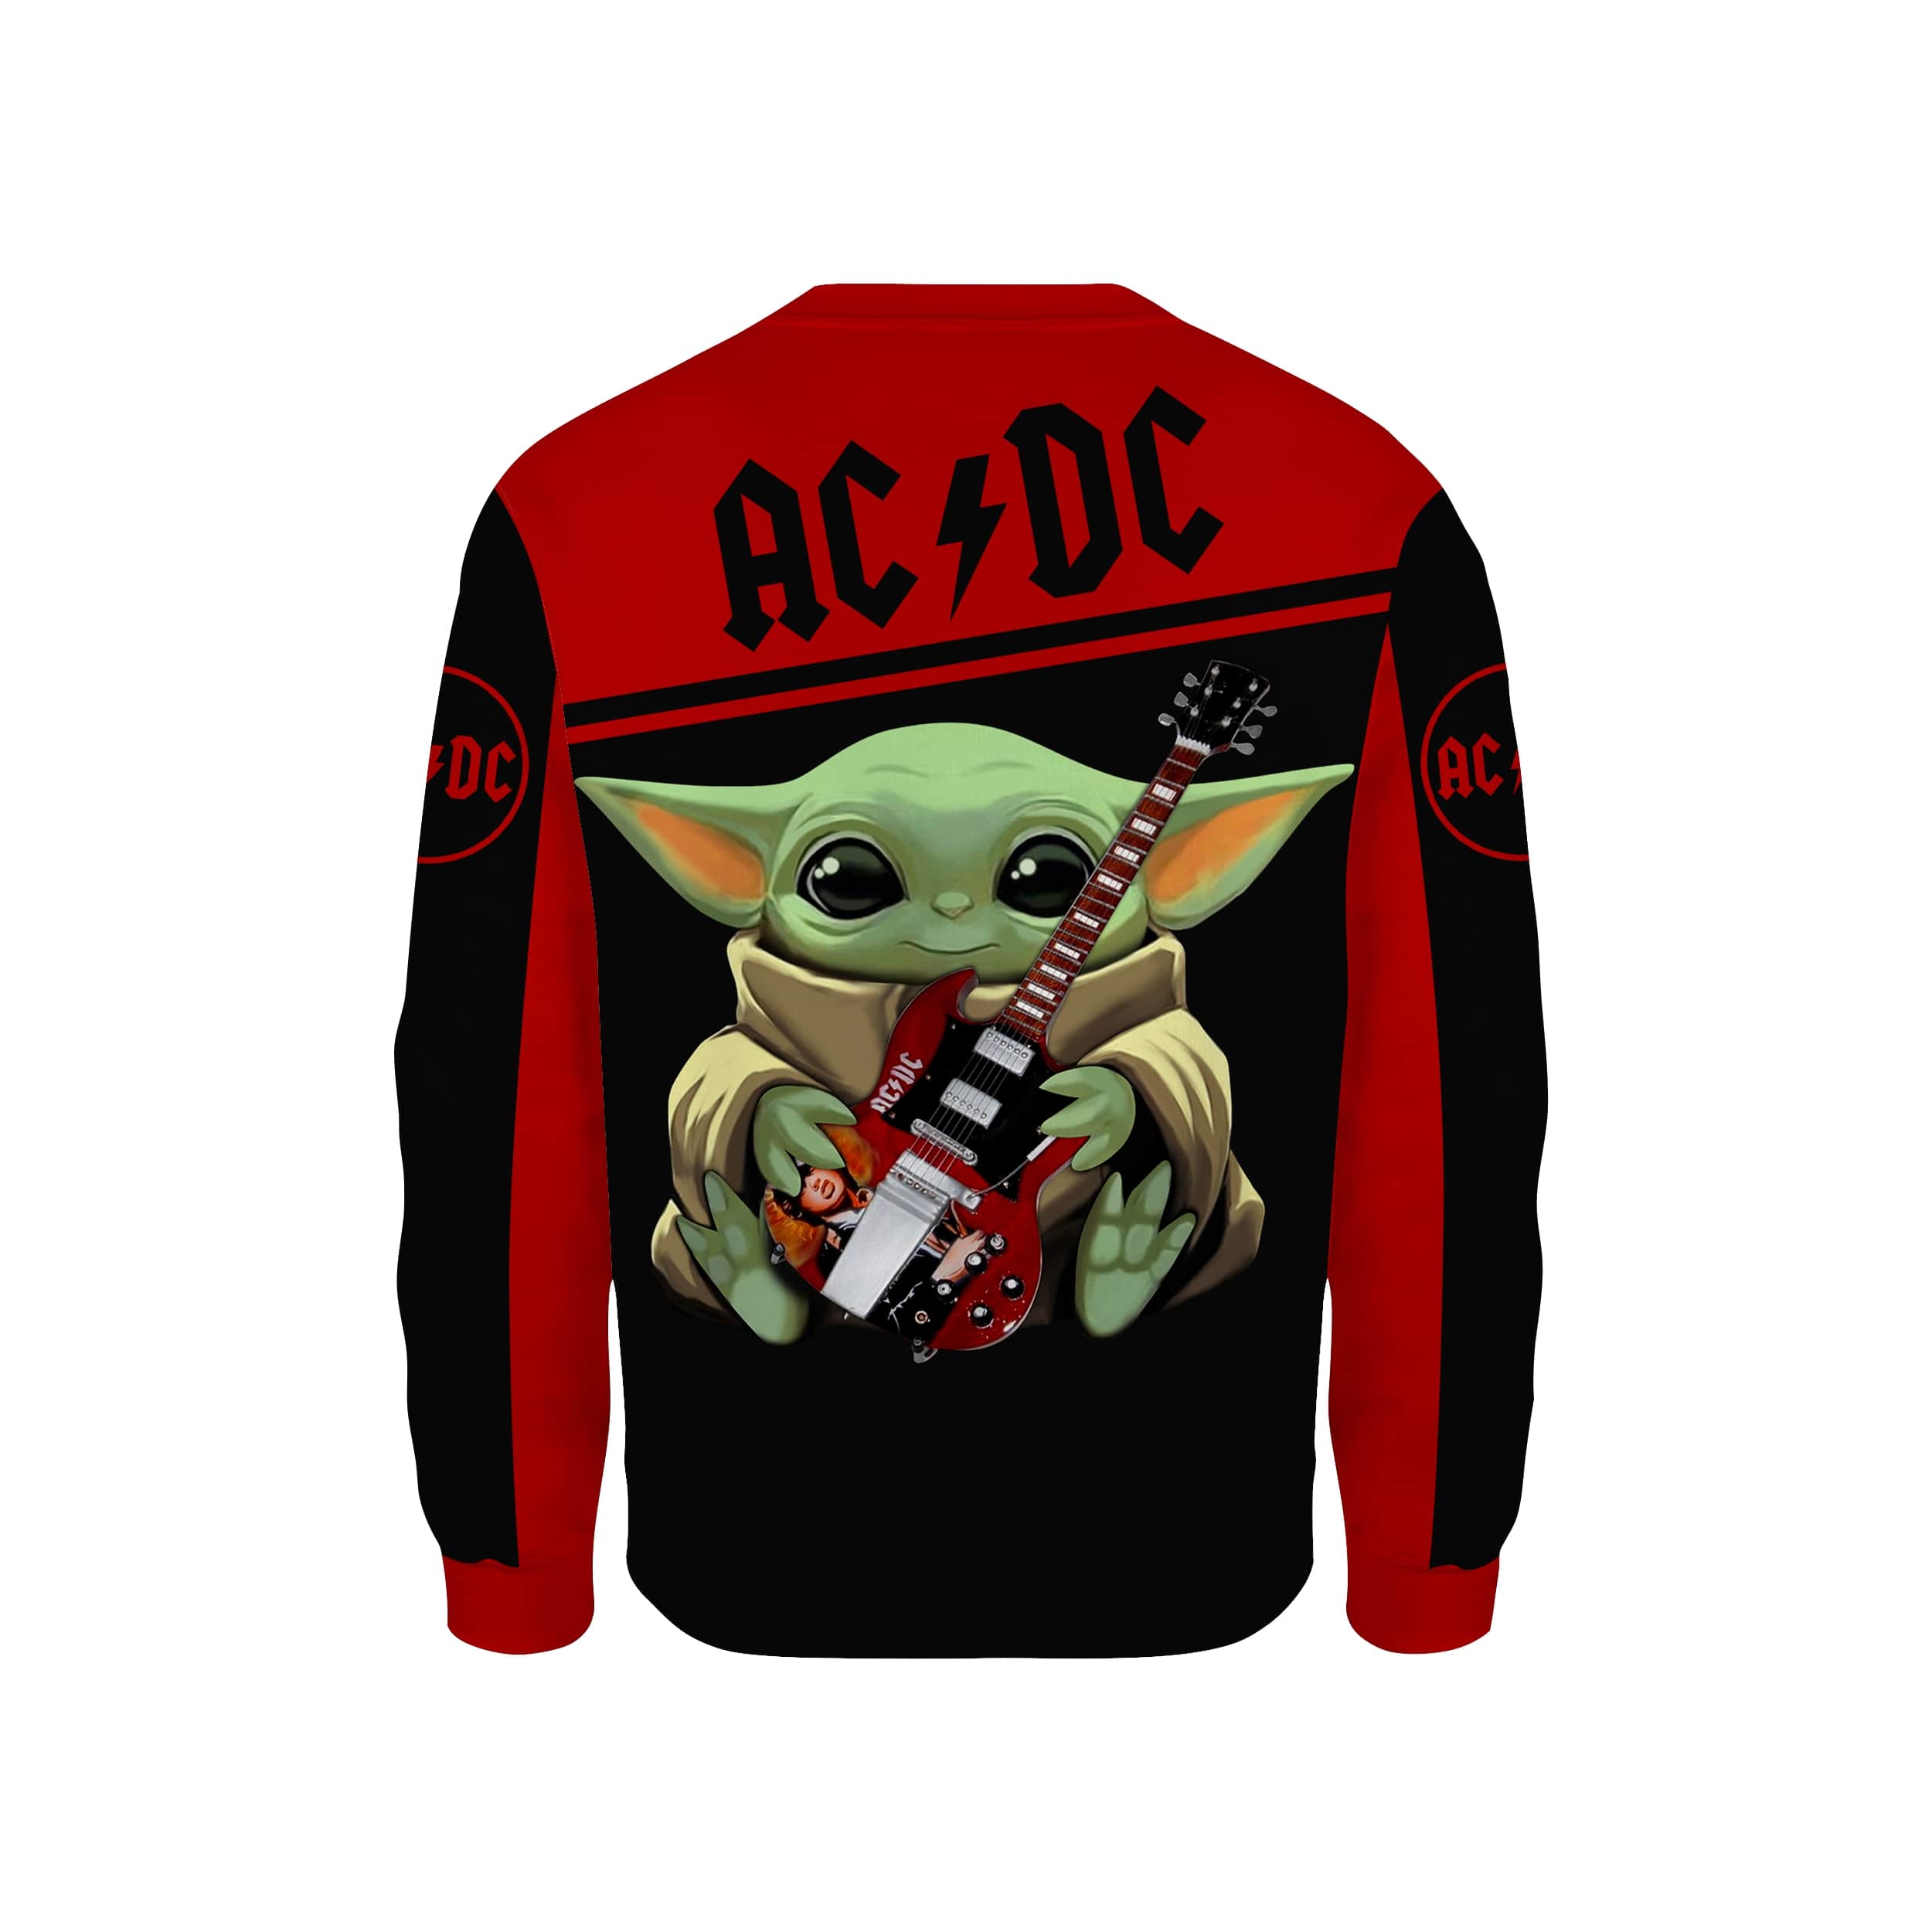 ACDC baby yoda all over print sweatshirt - back